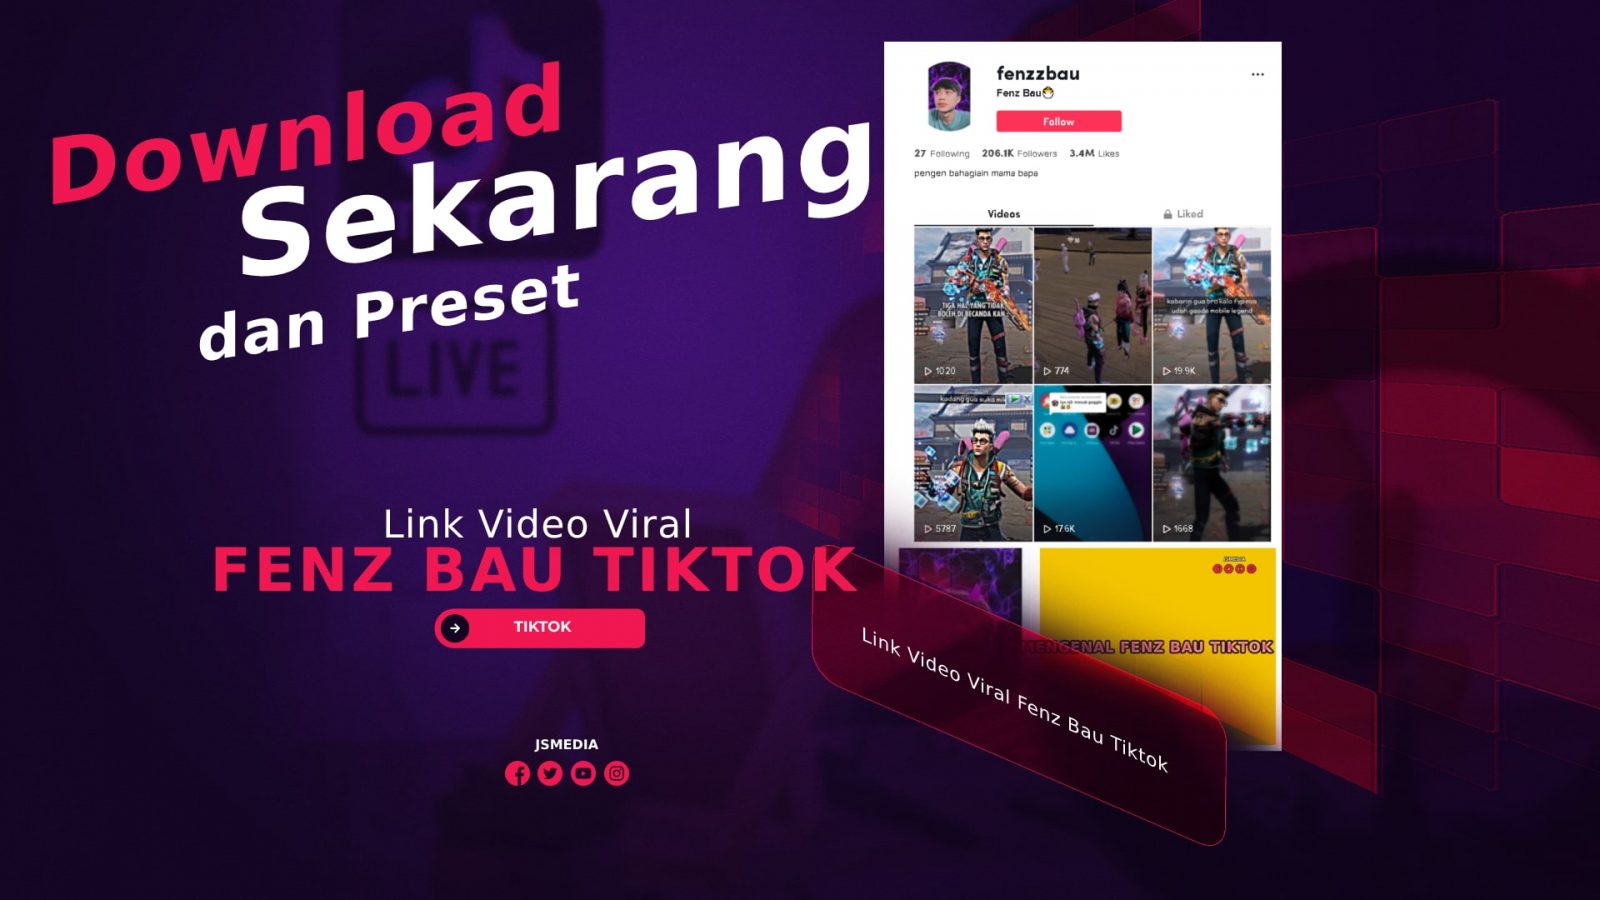 Link Video Viral Fenz Bau Tiktok dan Preset, Download Sekarang